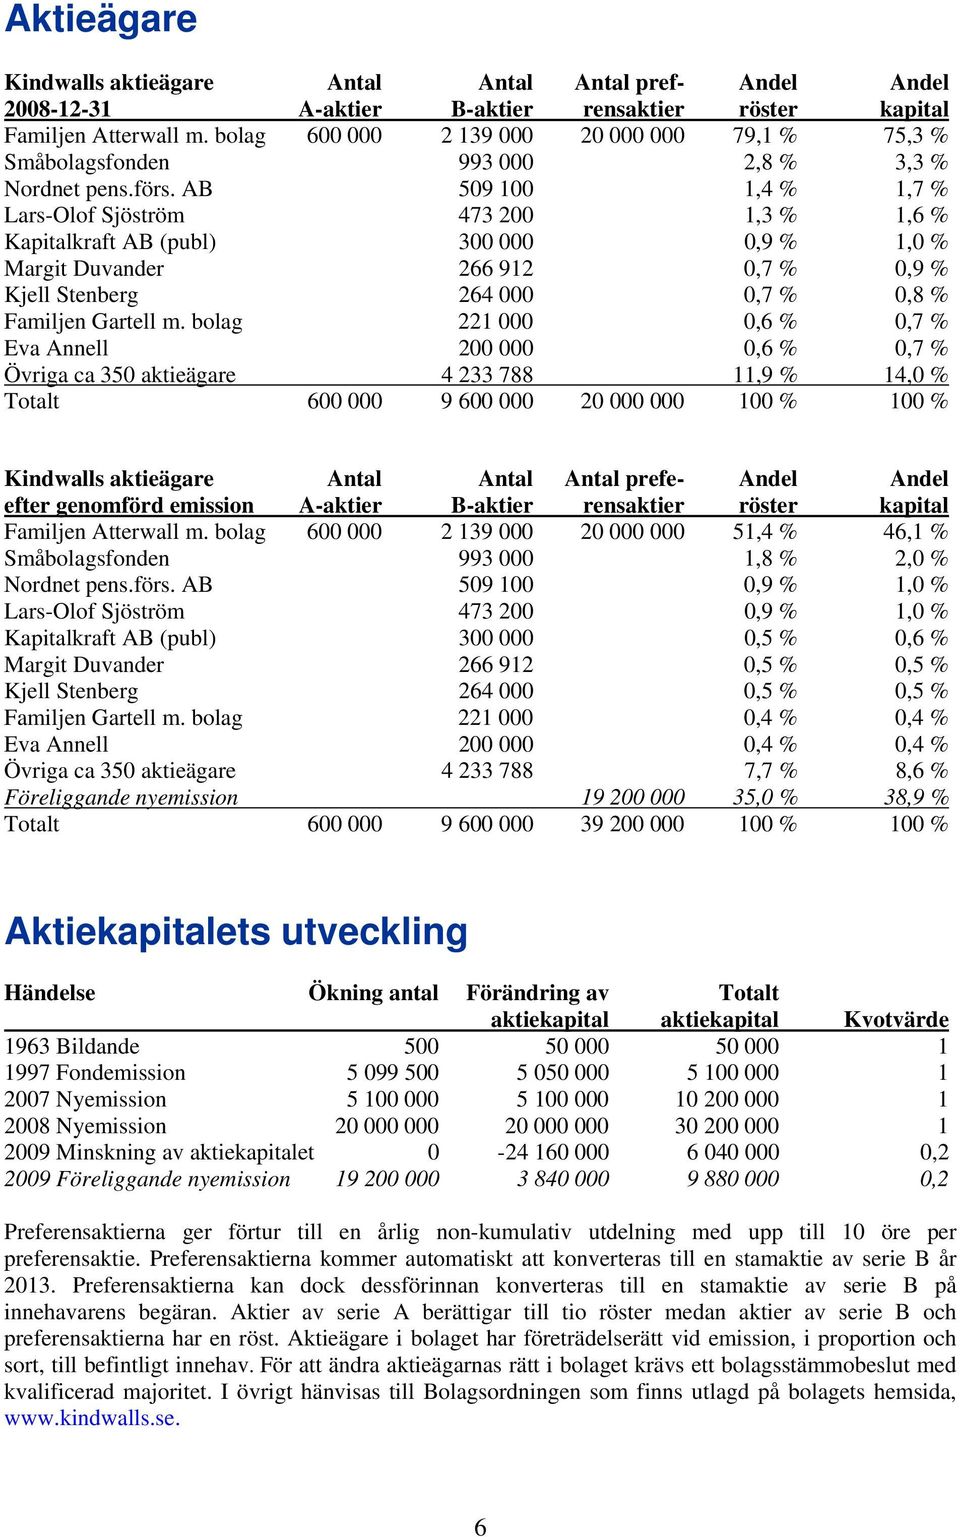 AB 509 100 1,4 % 1,7 % Lars-Olof Sjöström 473 200 1,3 % 1,6 % Kapitalkraft AB (publ) 300 000 0,9 % 1,0 % Margit Duvander 266 912 0,7 % 0,9 % Kjell Stenberg 264 000 0,7 % 0,8 % Familjen Gartell m.